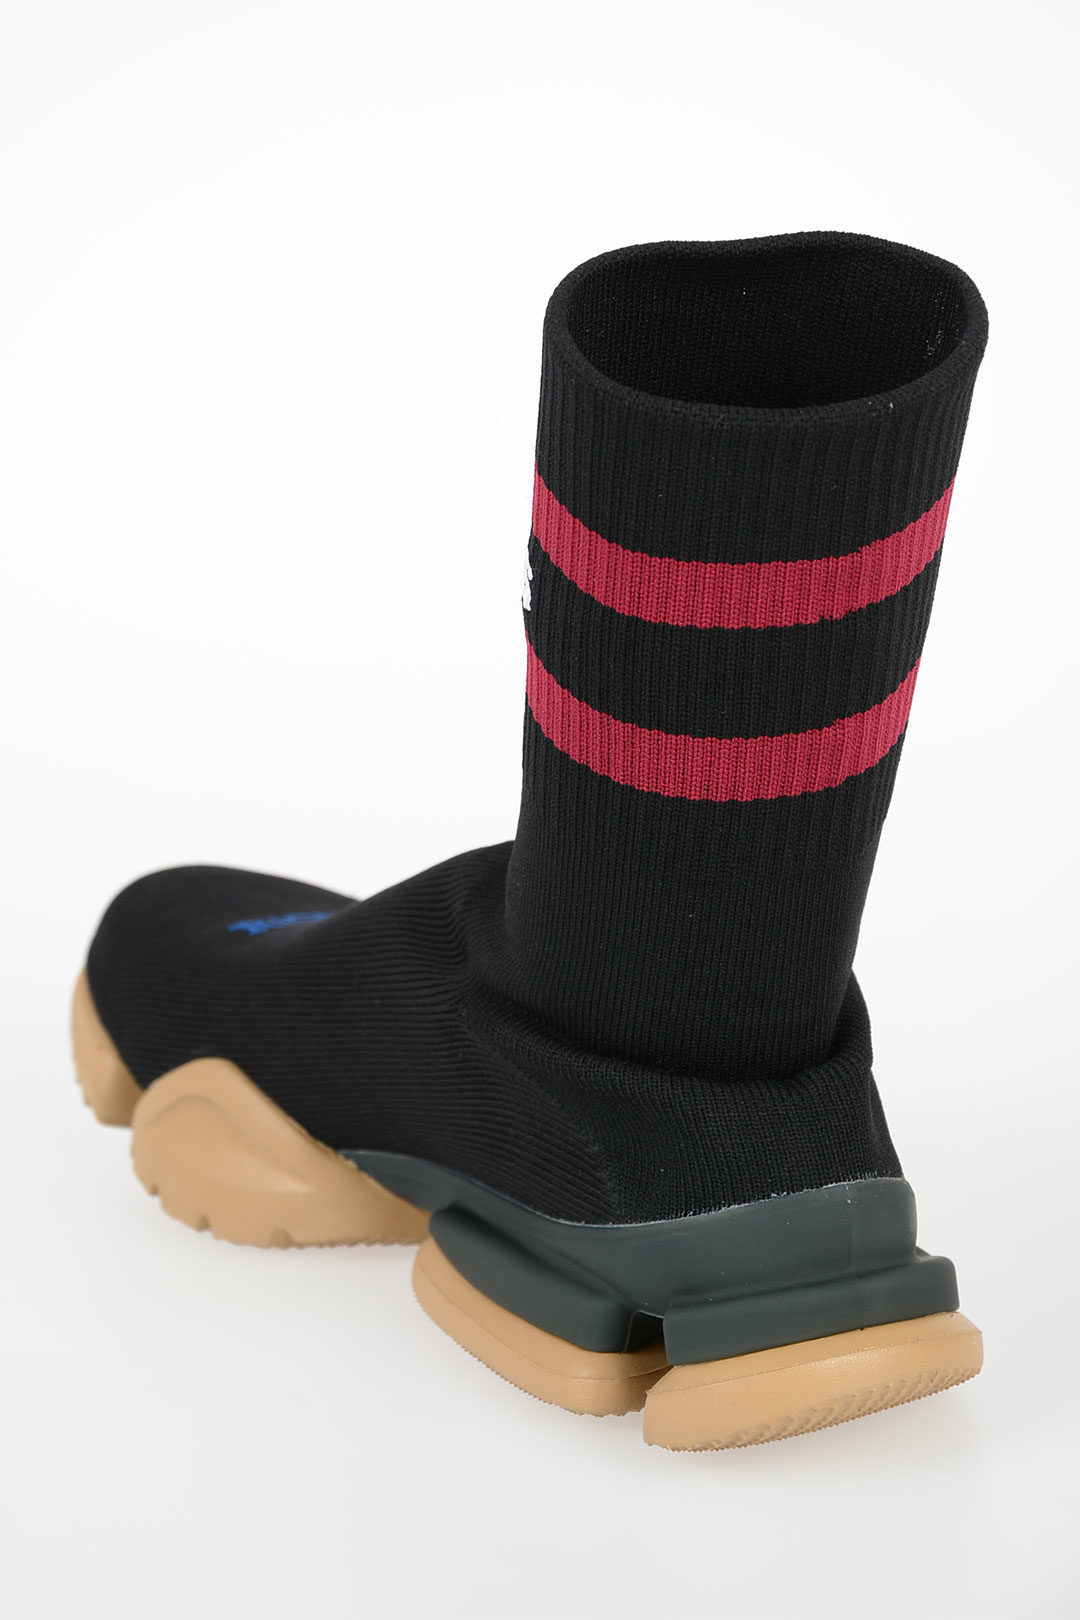 Vetements REEBOK Sneakers Socks Boots unisex men women - Glamood Outlet